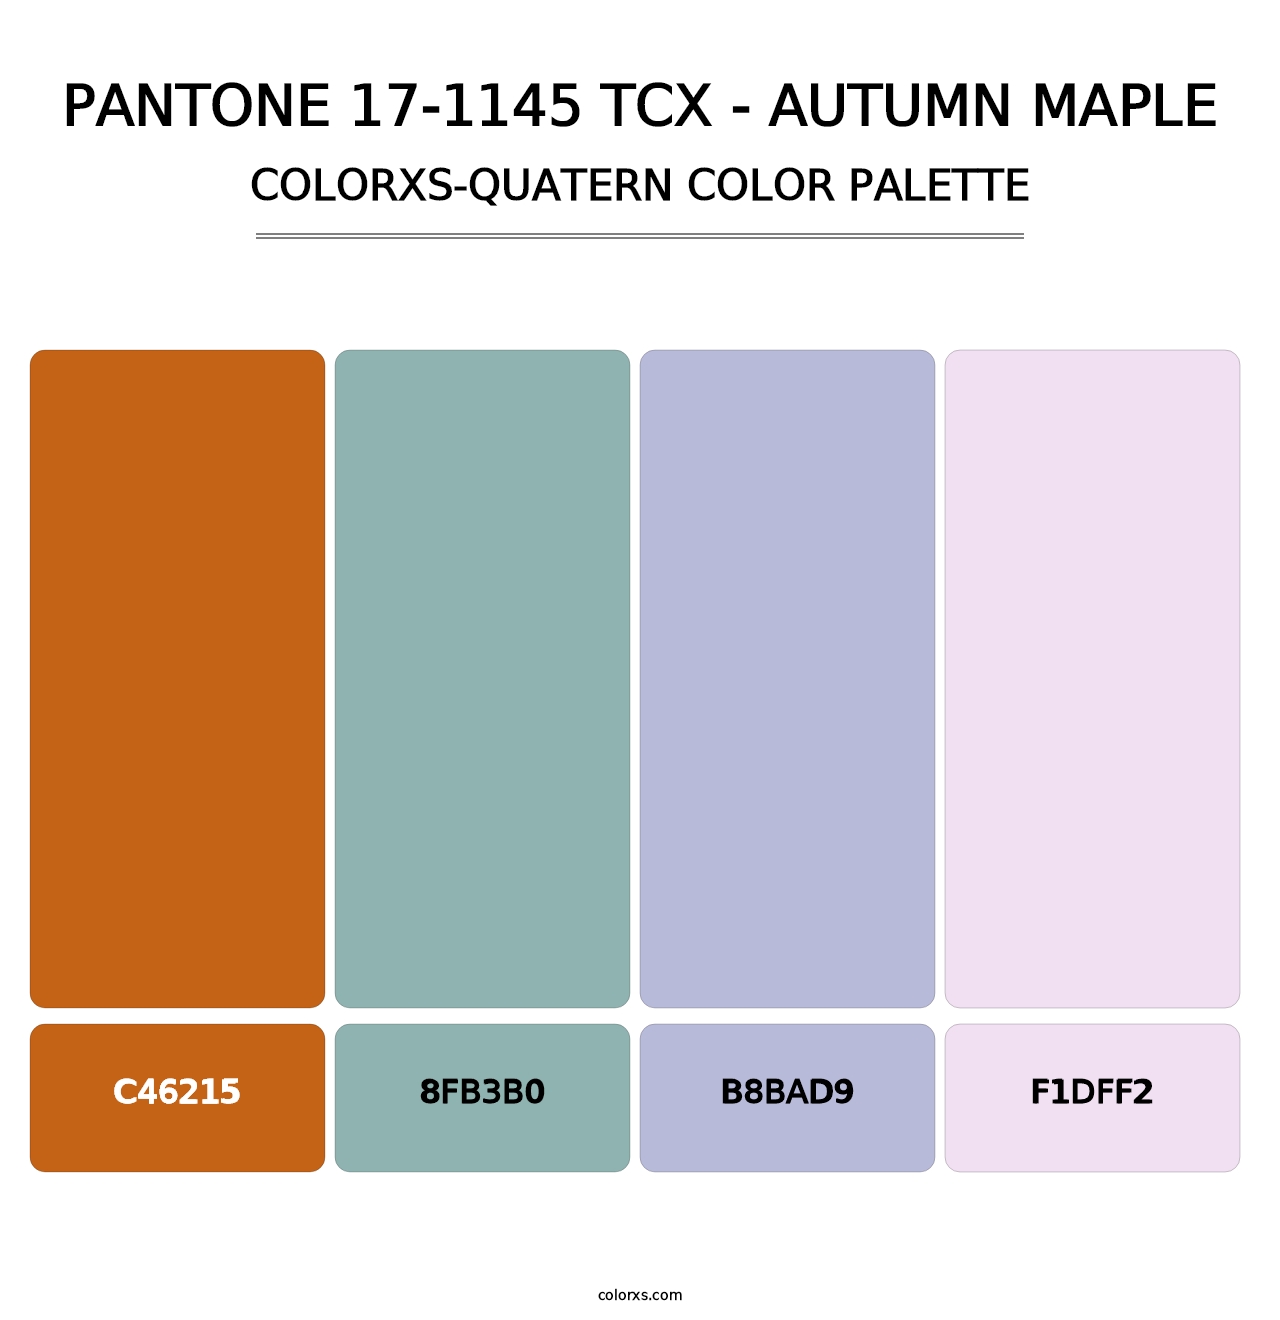 PANTONE 17-1145 TCX - Autumn Maple - Colorxs Quatern Palette